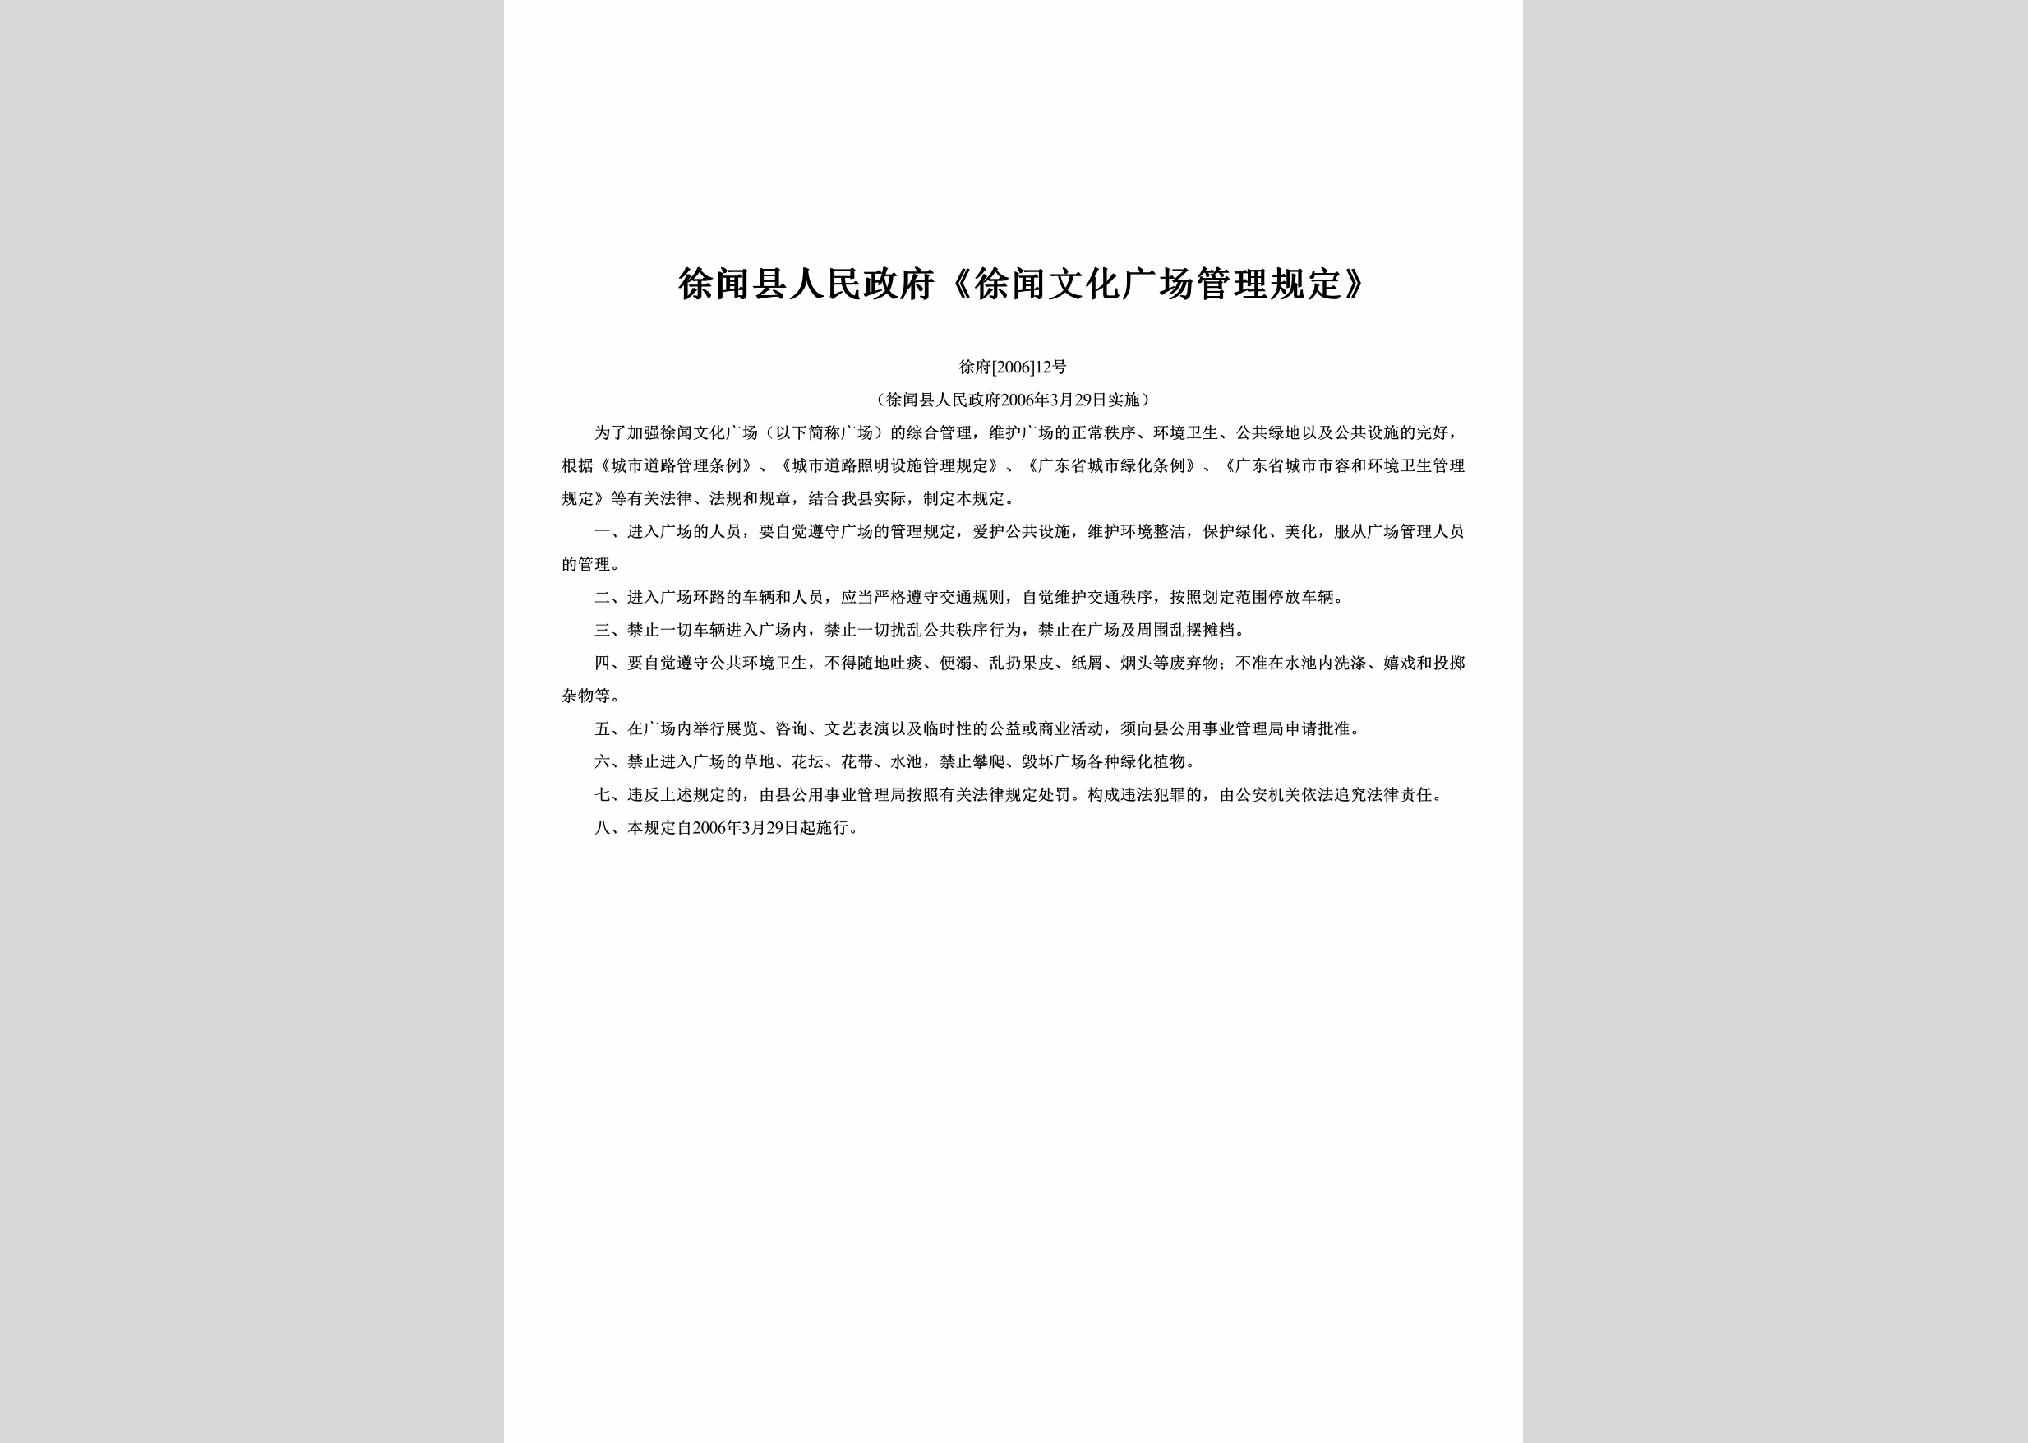 徐府[2006]12号：《徐闻文化广场管理规定》